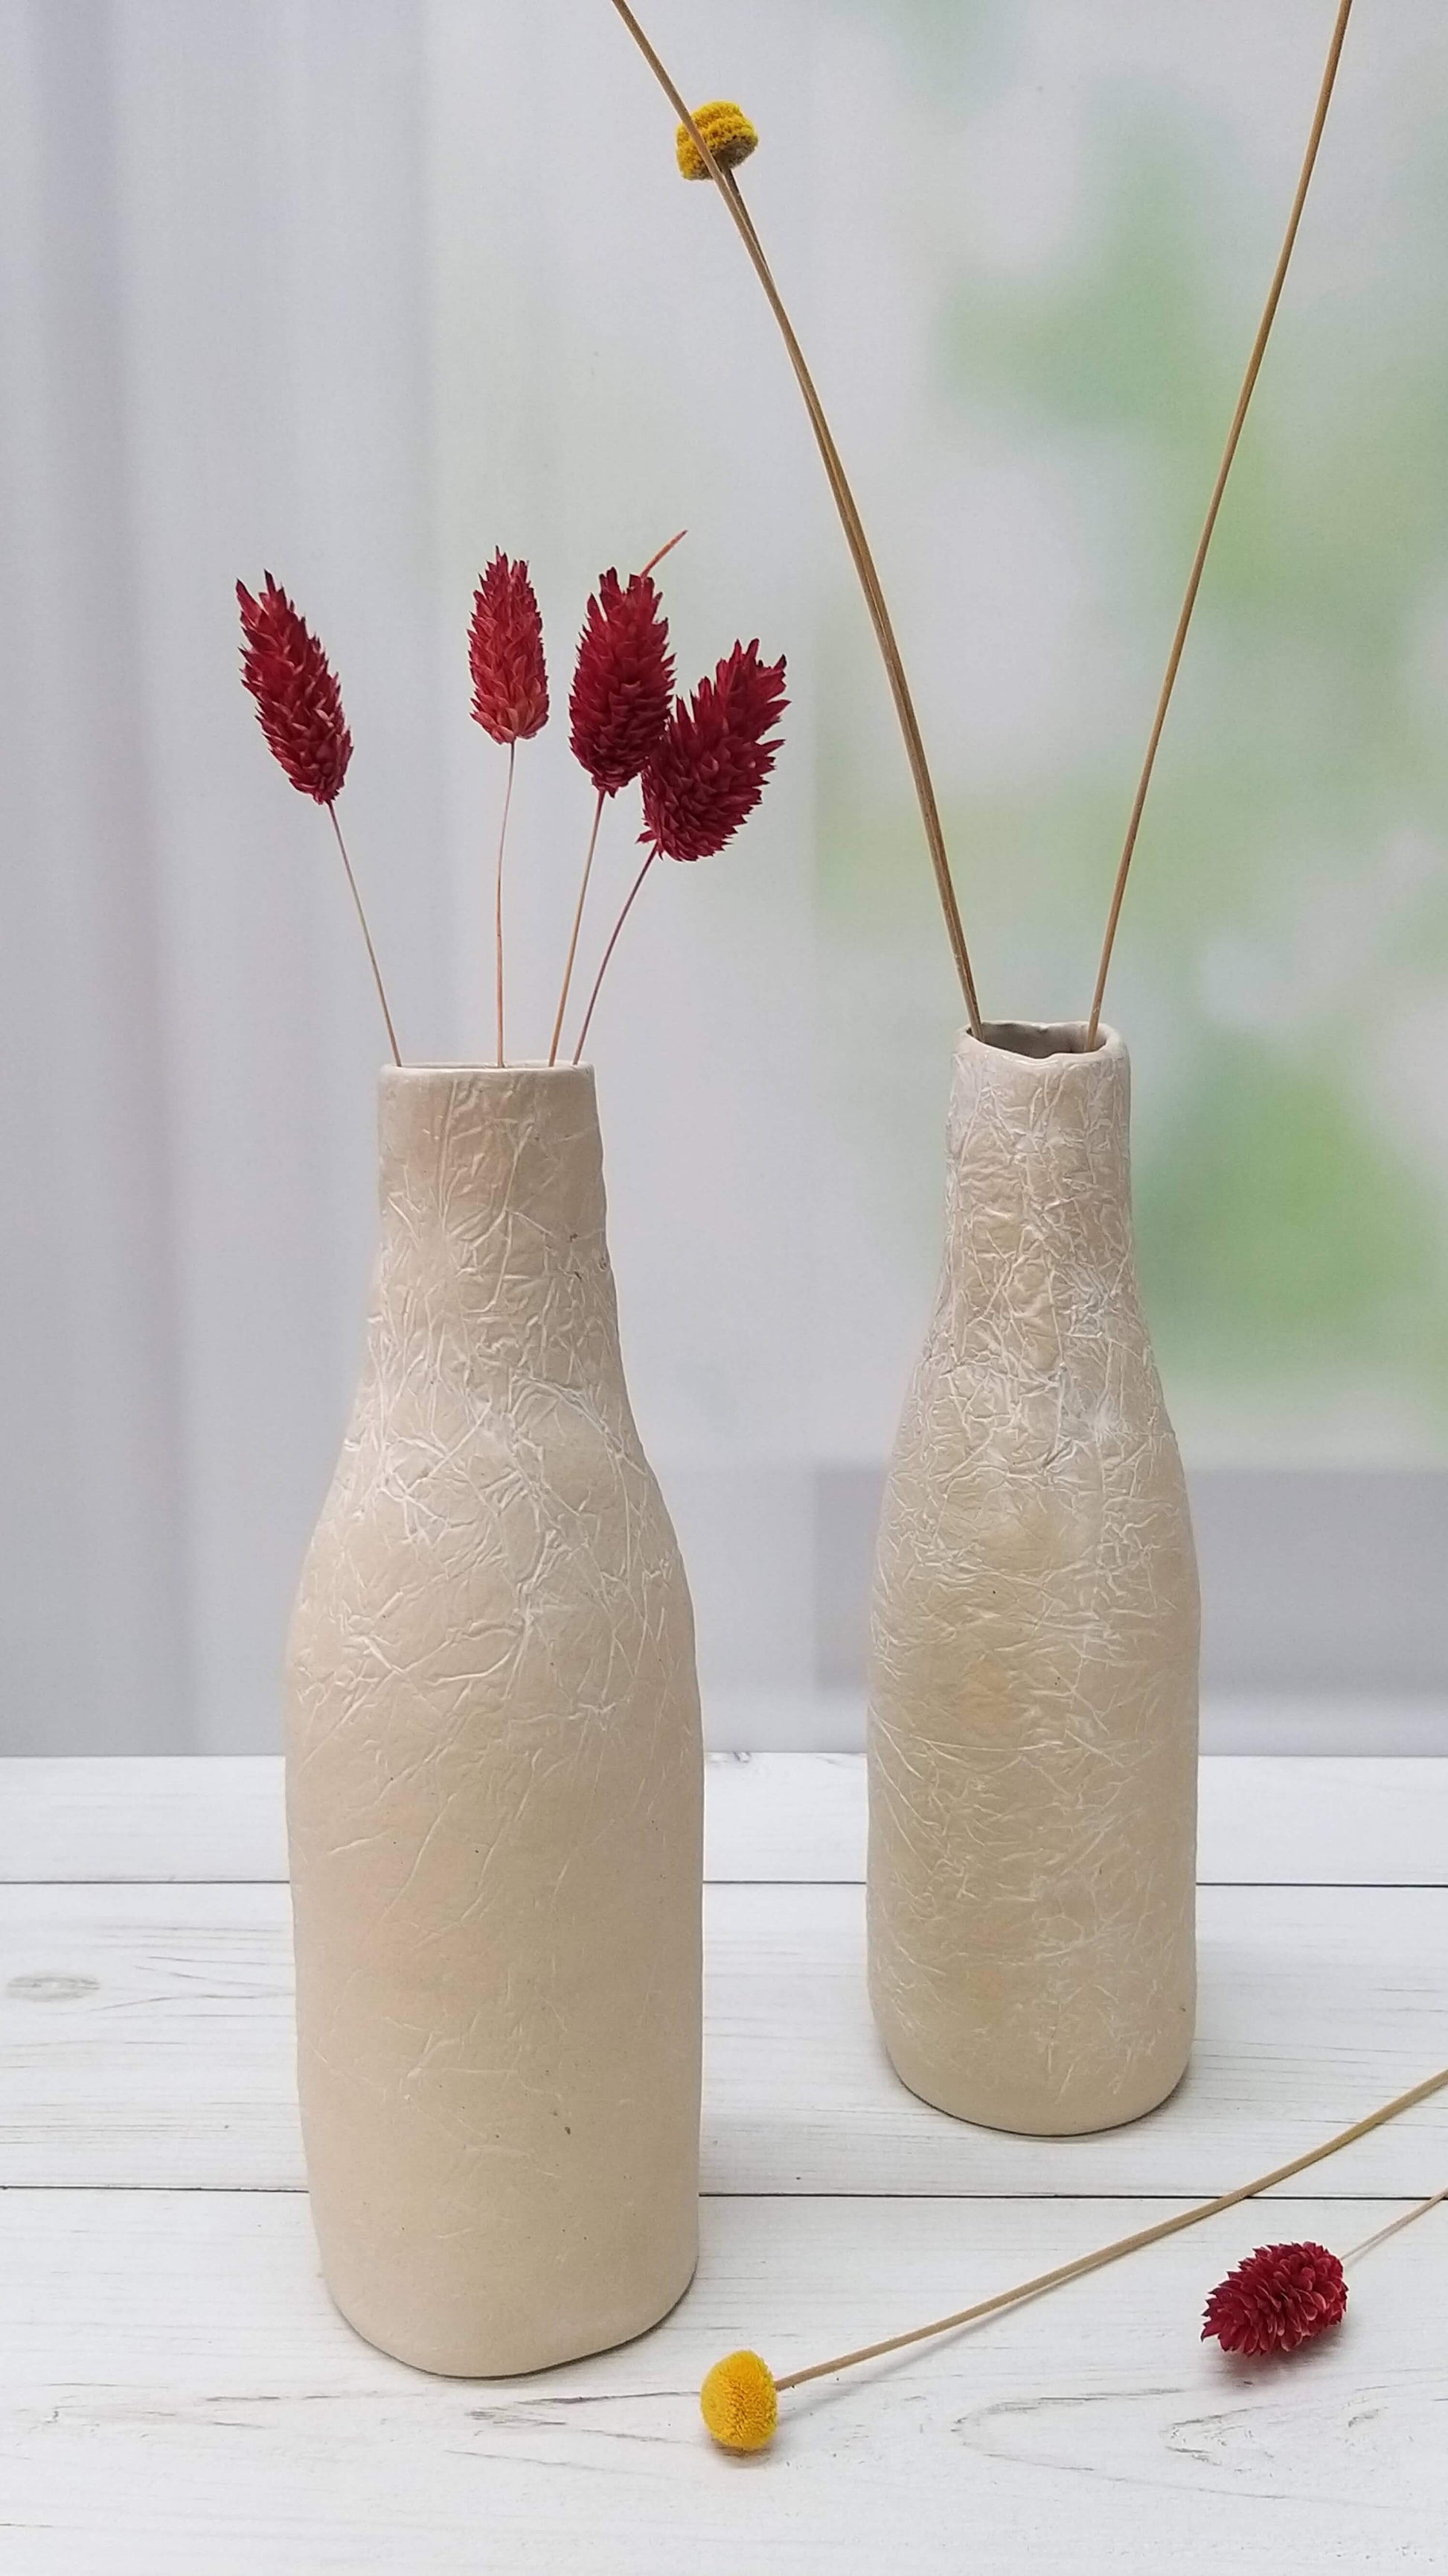 שני אגרטלי קרמיקה לבנים בצורת בקבוק מונחים זה ליד זה ובתוכם פרחים אדומים וצהובים